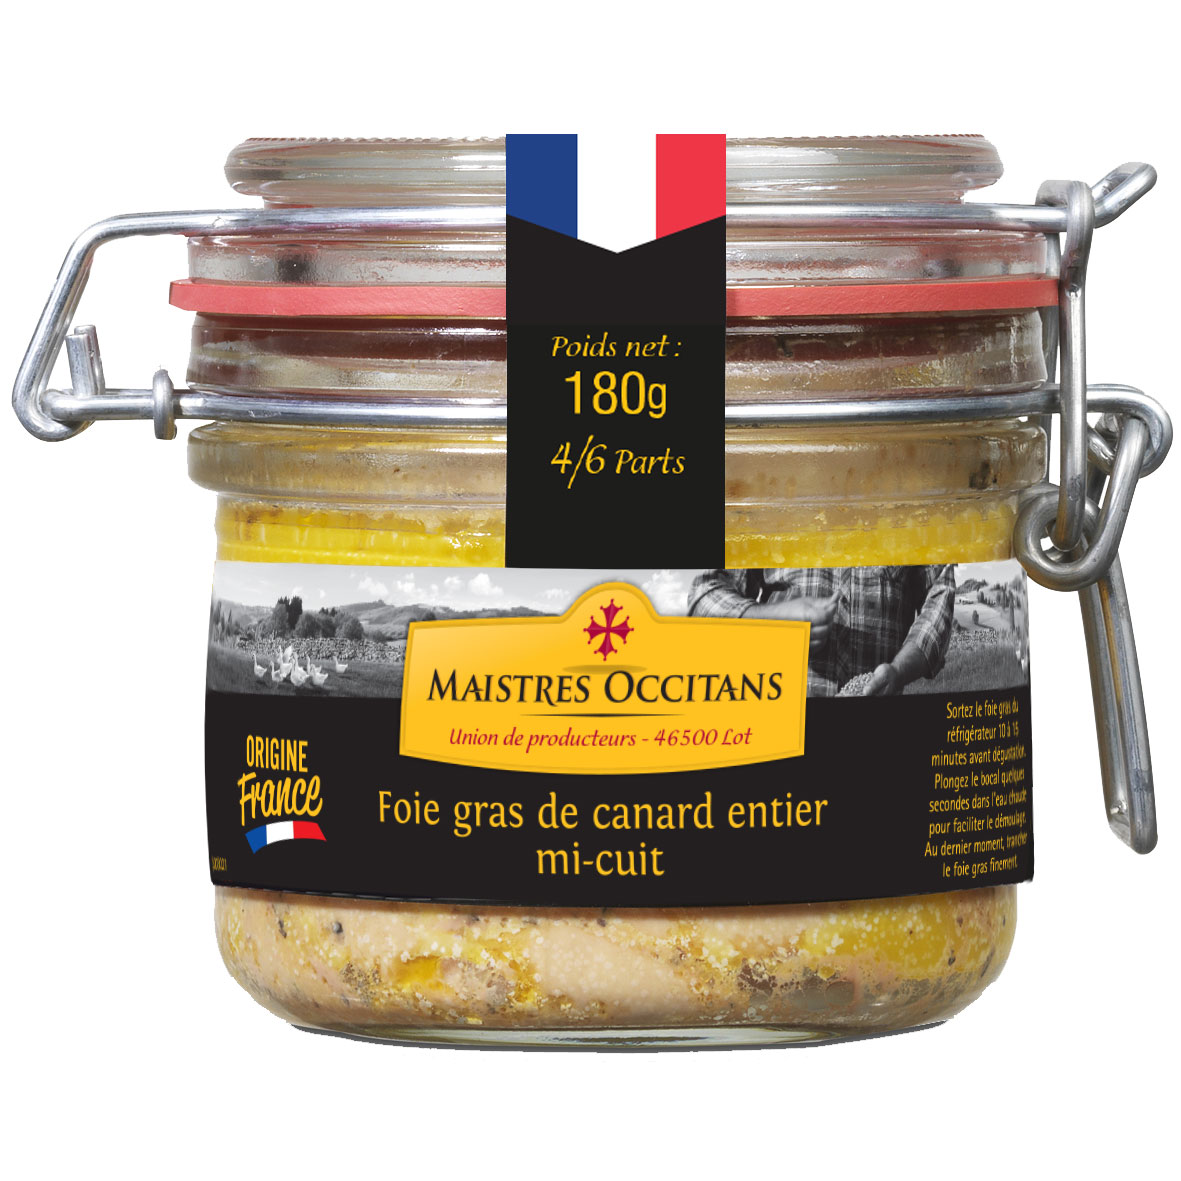 Foie gras de canard entier mi-cuit 180g - Maistres Occitans